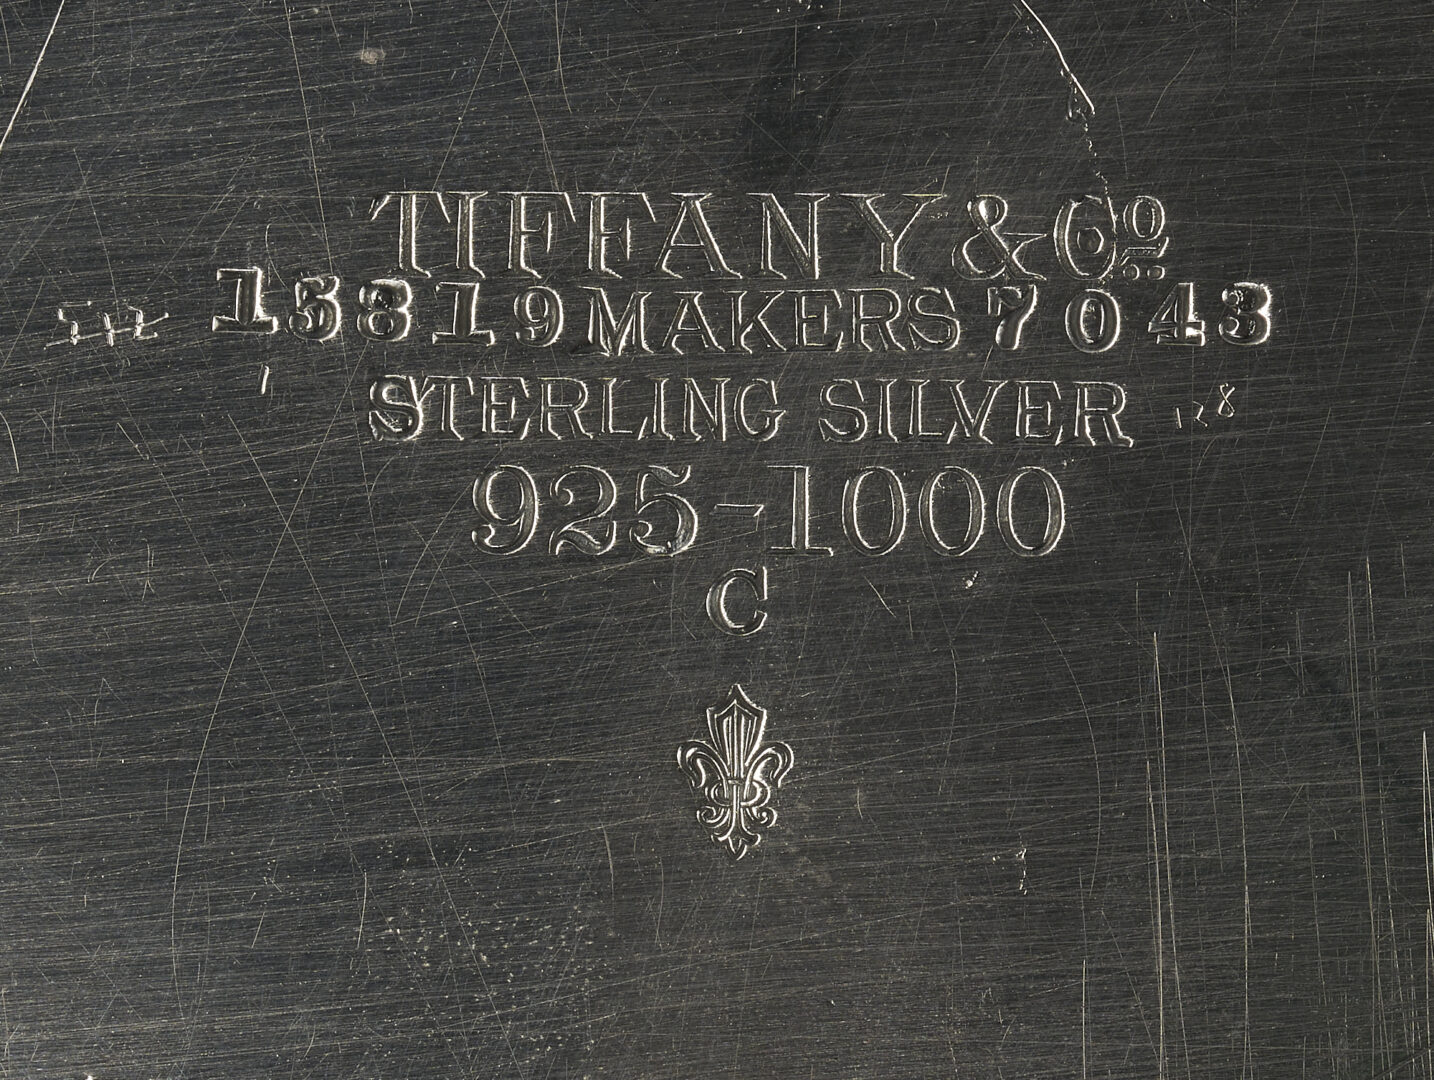 Lot 56: Tiffany Sterling Silver Renaissance Platter, Paulding Farnham